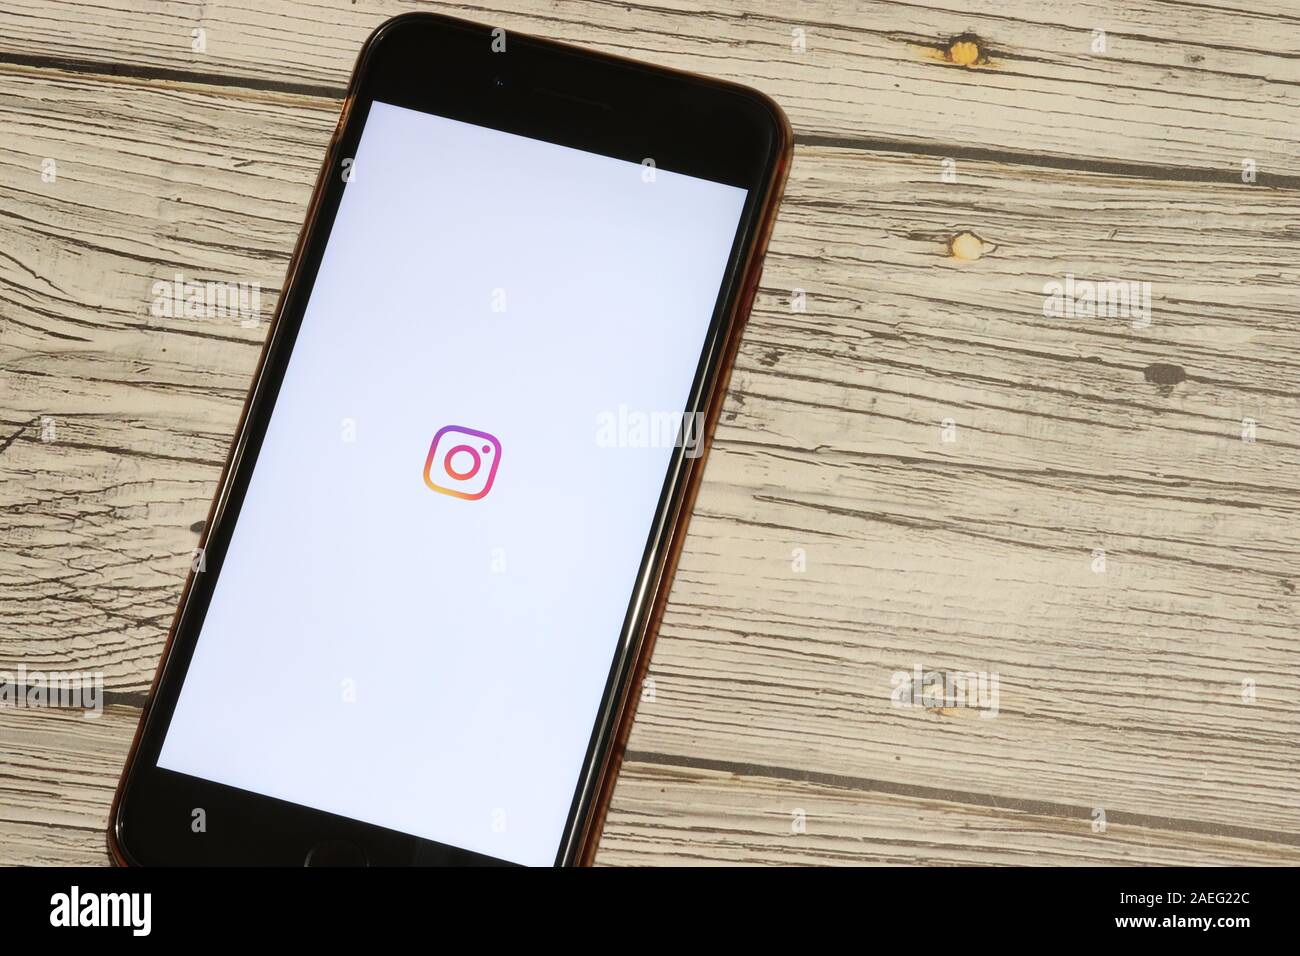 Los Angeles, Kalifornien, USA - 4. Dezember 2019: Instagram Symbol auf dem Telefondisplay Draufsicht auf weißem Hintergrund, Illustrative Editorial. Stockfoto